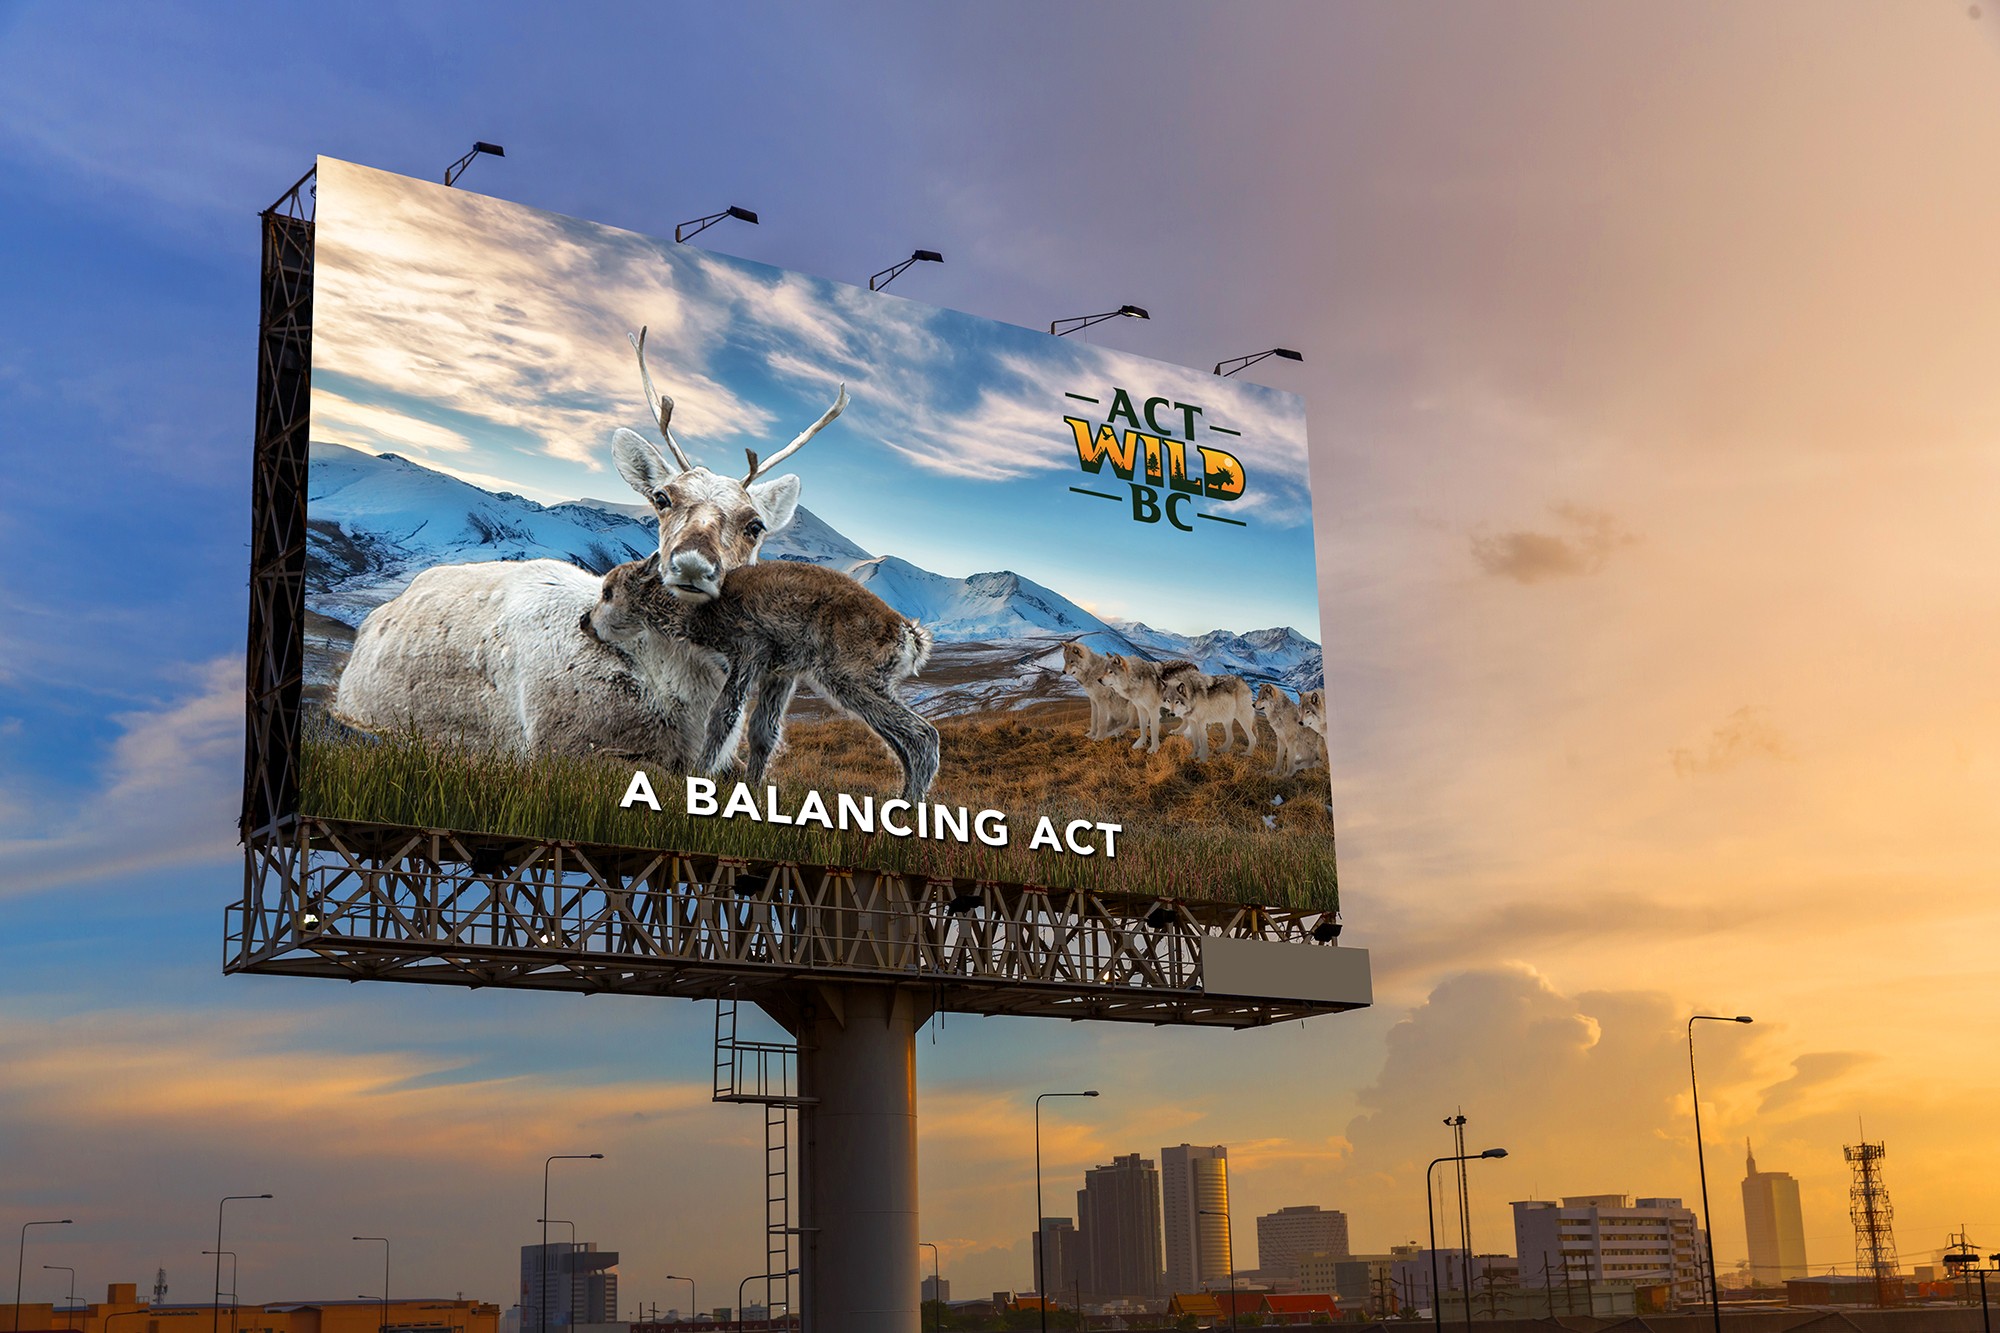 Act Wild BC billboard design